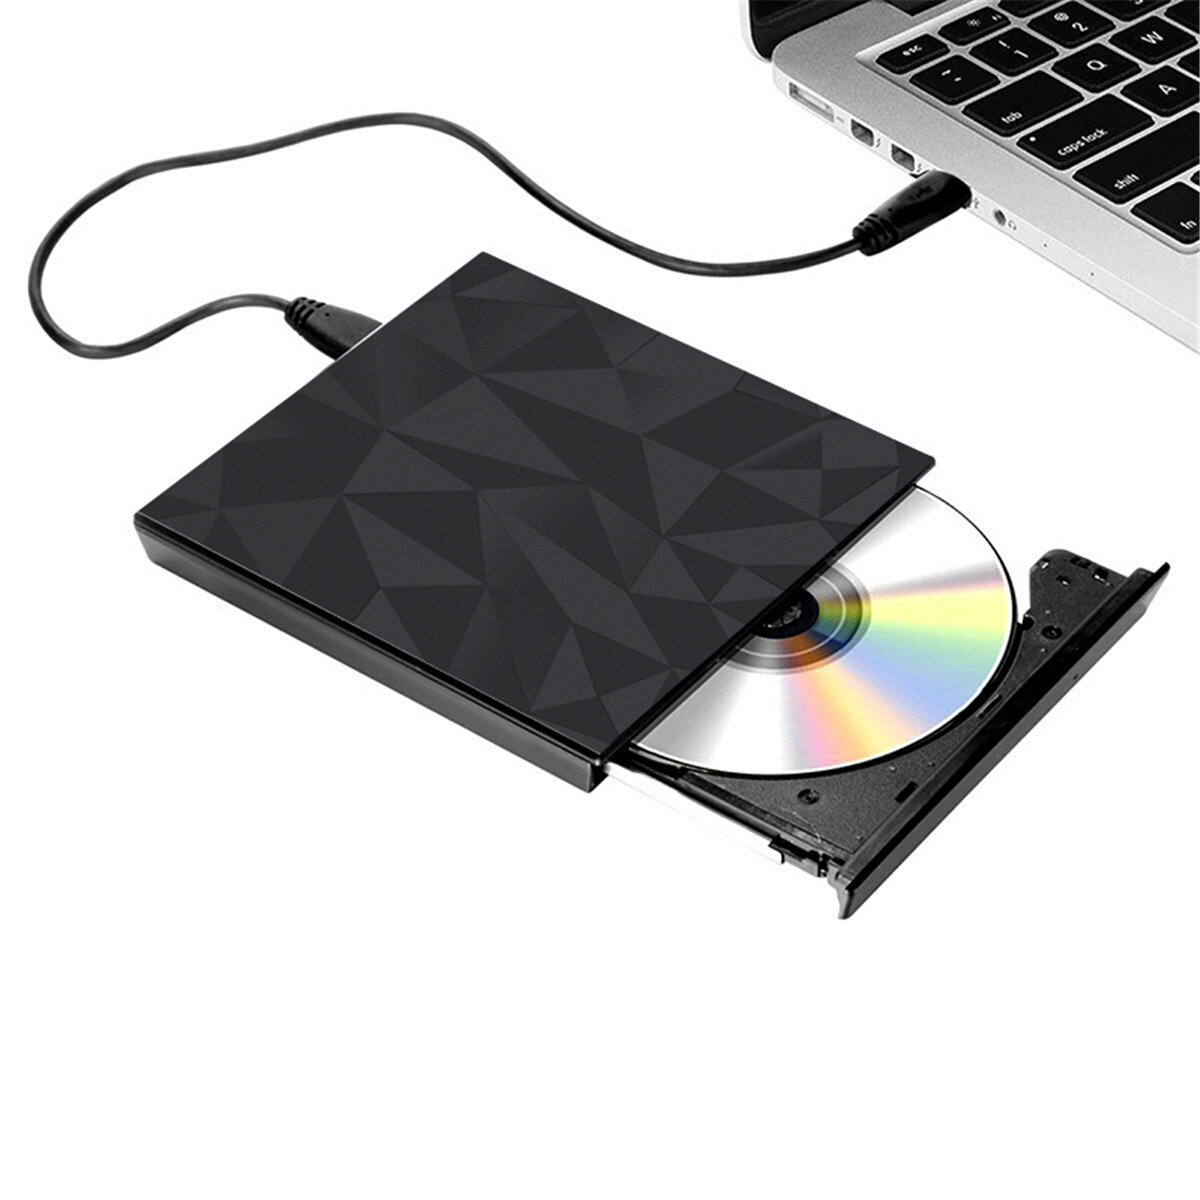 Tragbares USB 3.0 Black Tray Typ Externe DVD-RW Max.24X Hochgeschwindigkeitsdatenübertragung für Win XP Win 7 Win 8 Win